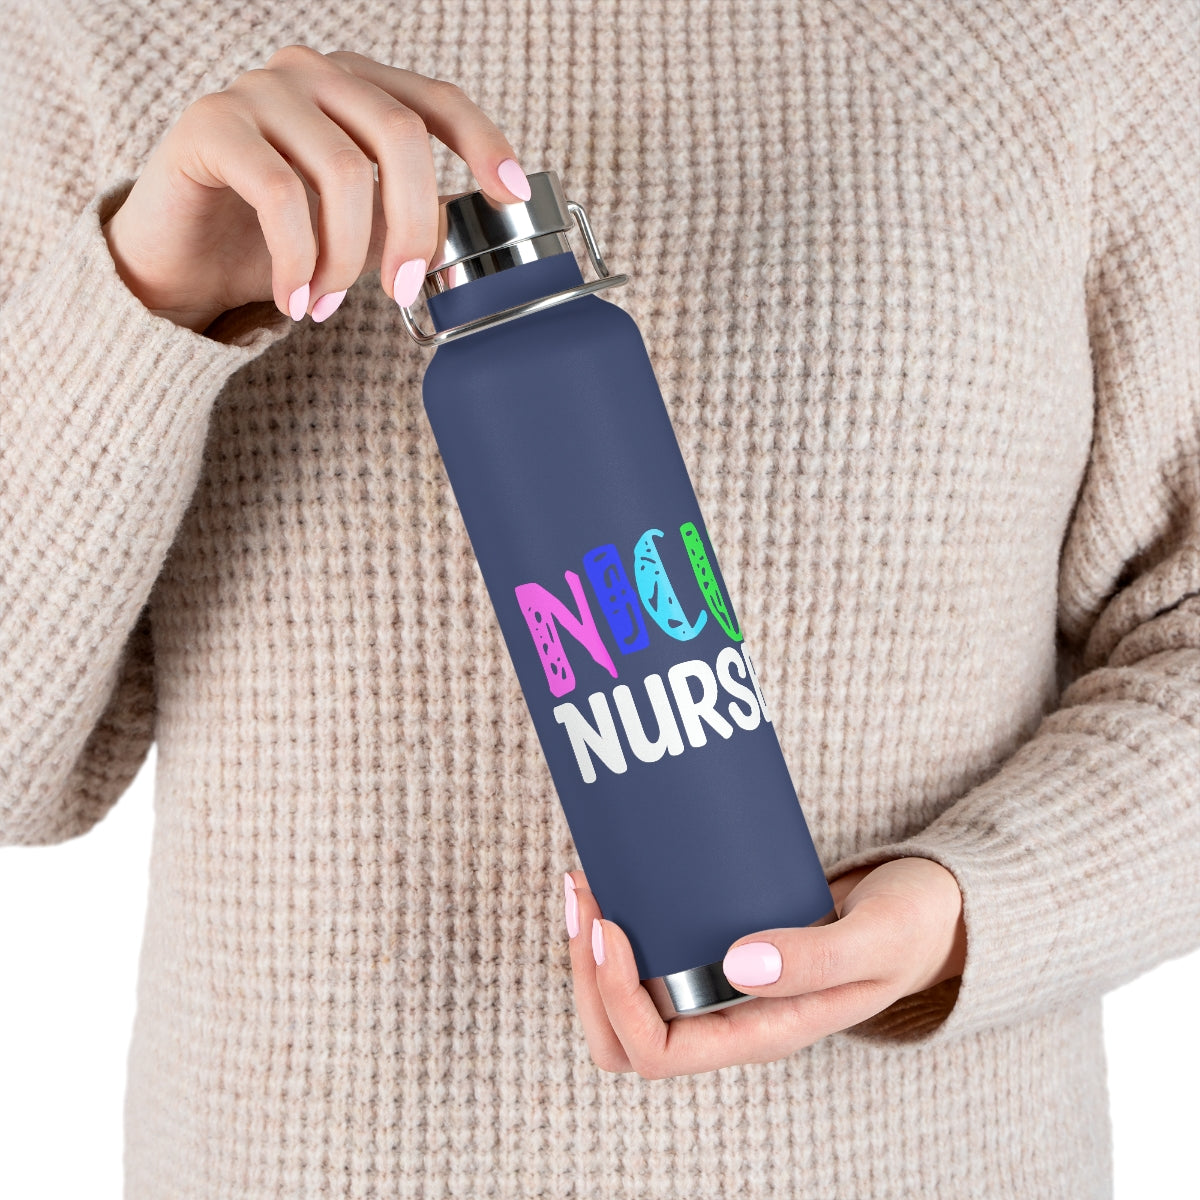 NICU Nurse Copper Vacuum Insulated Bottle, 22oz